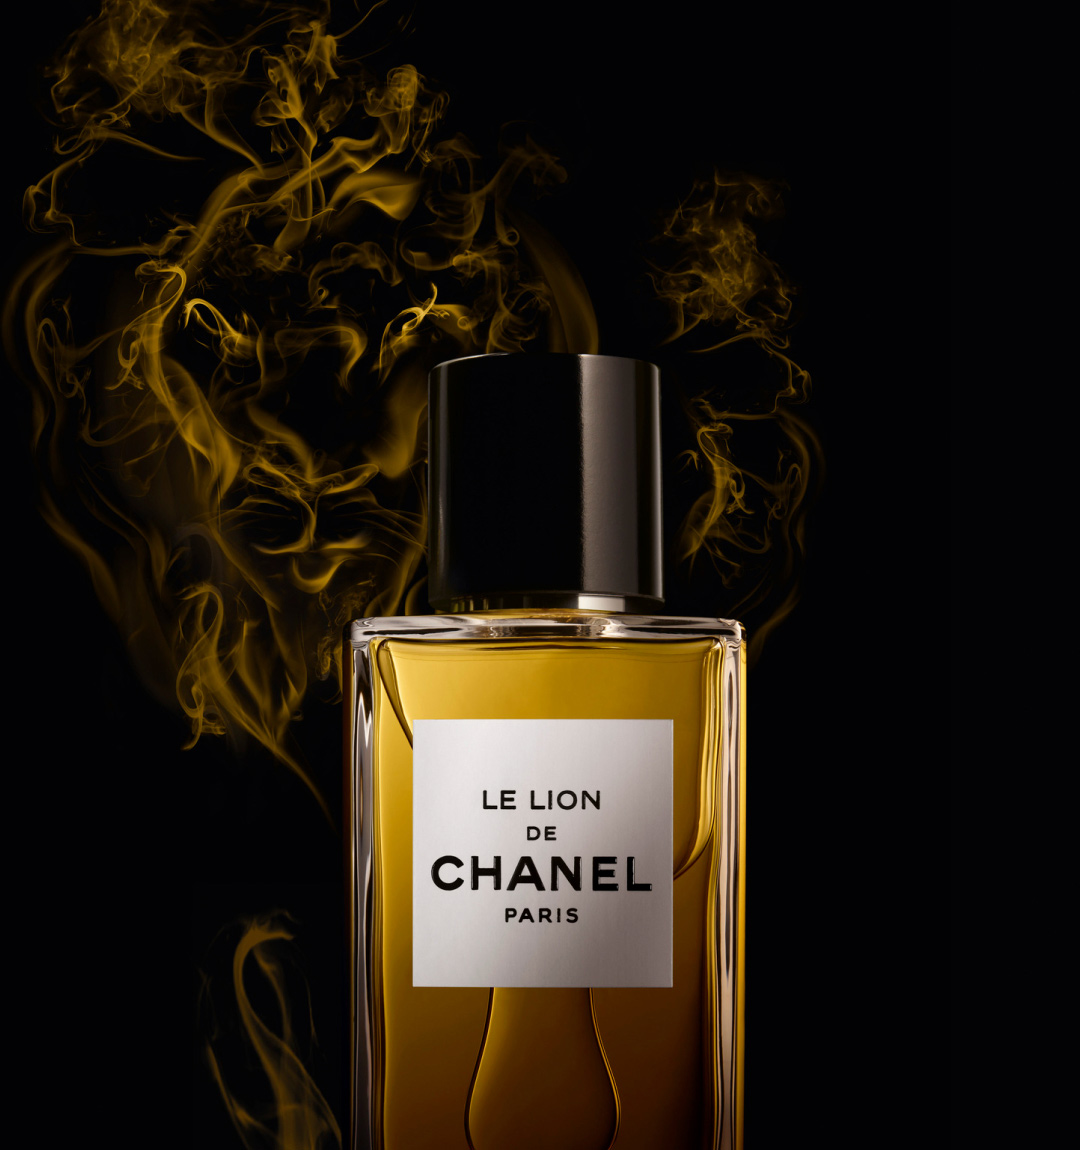 Chanel Les Exclusifs Le Lion & Coromandel, First Impressions